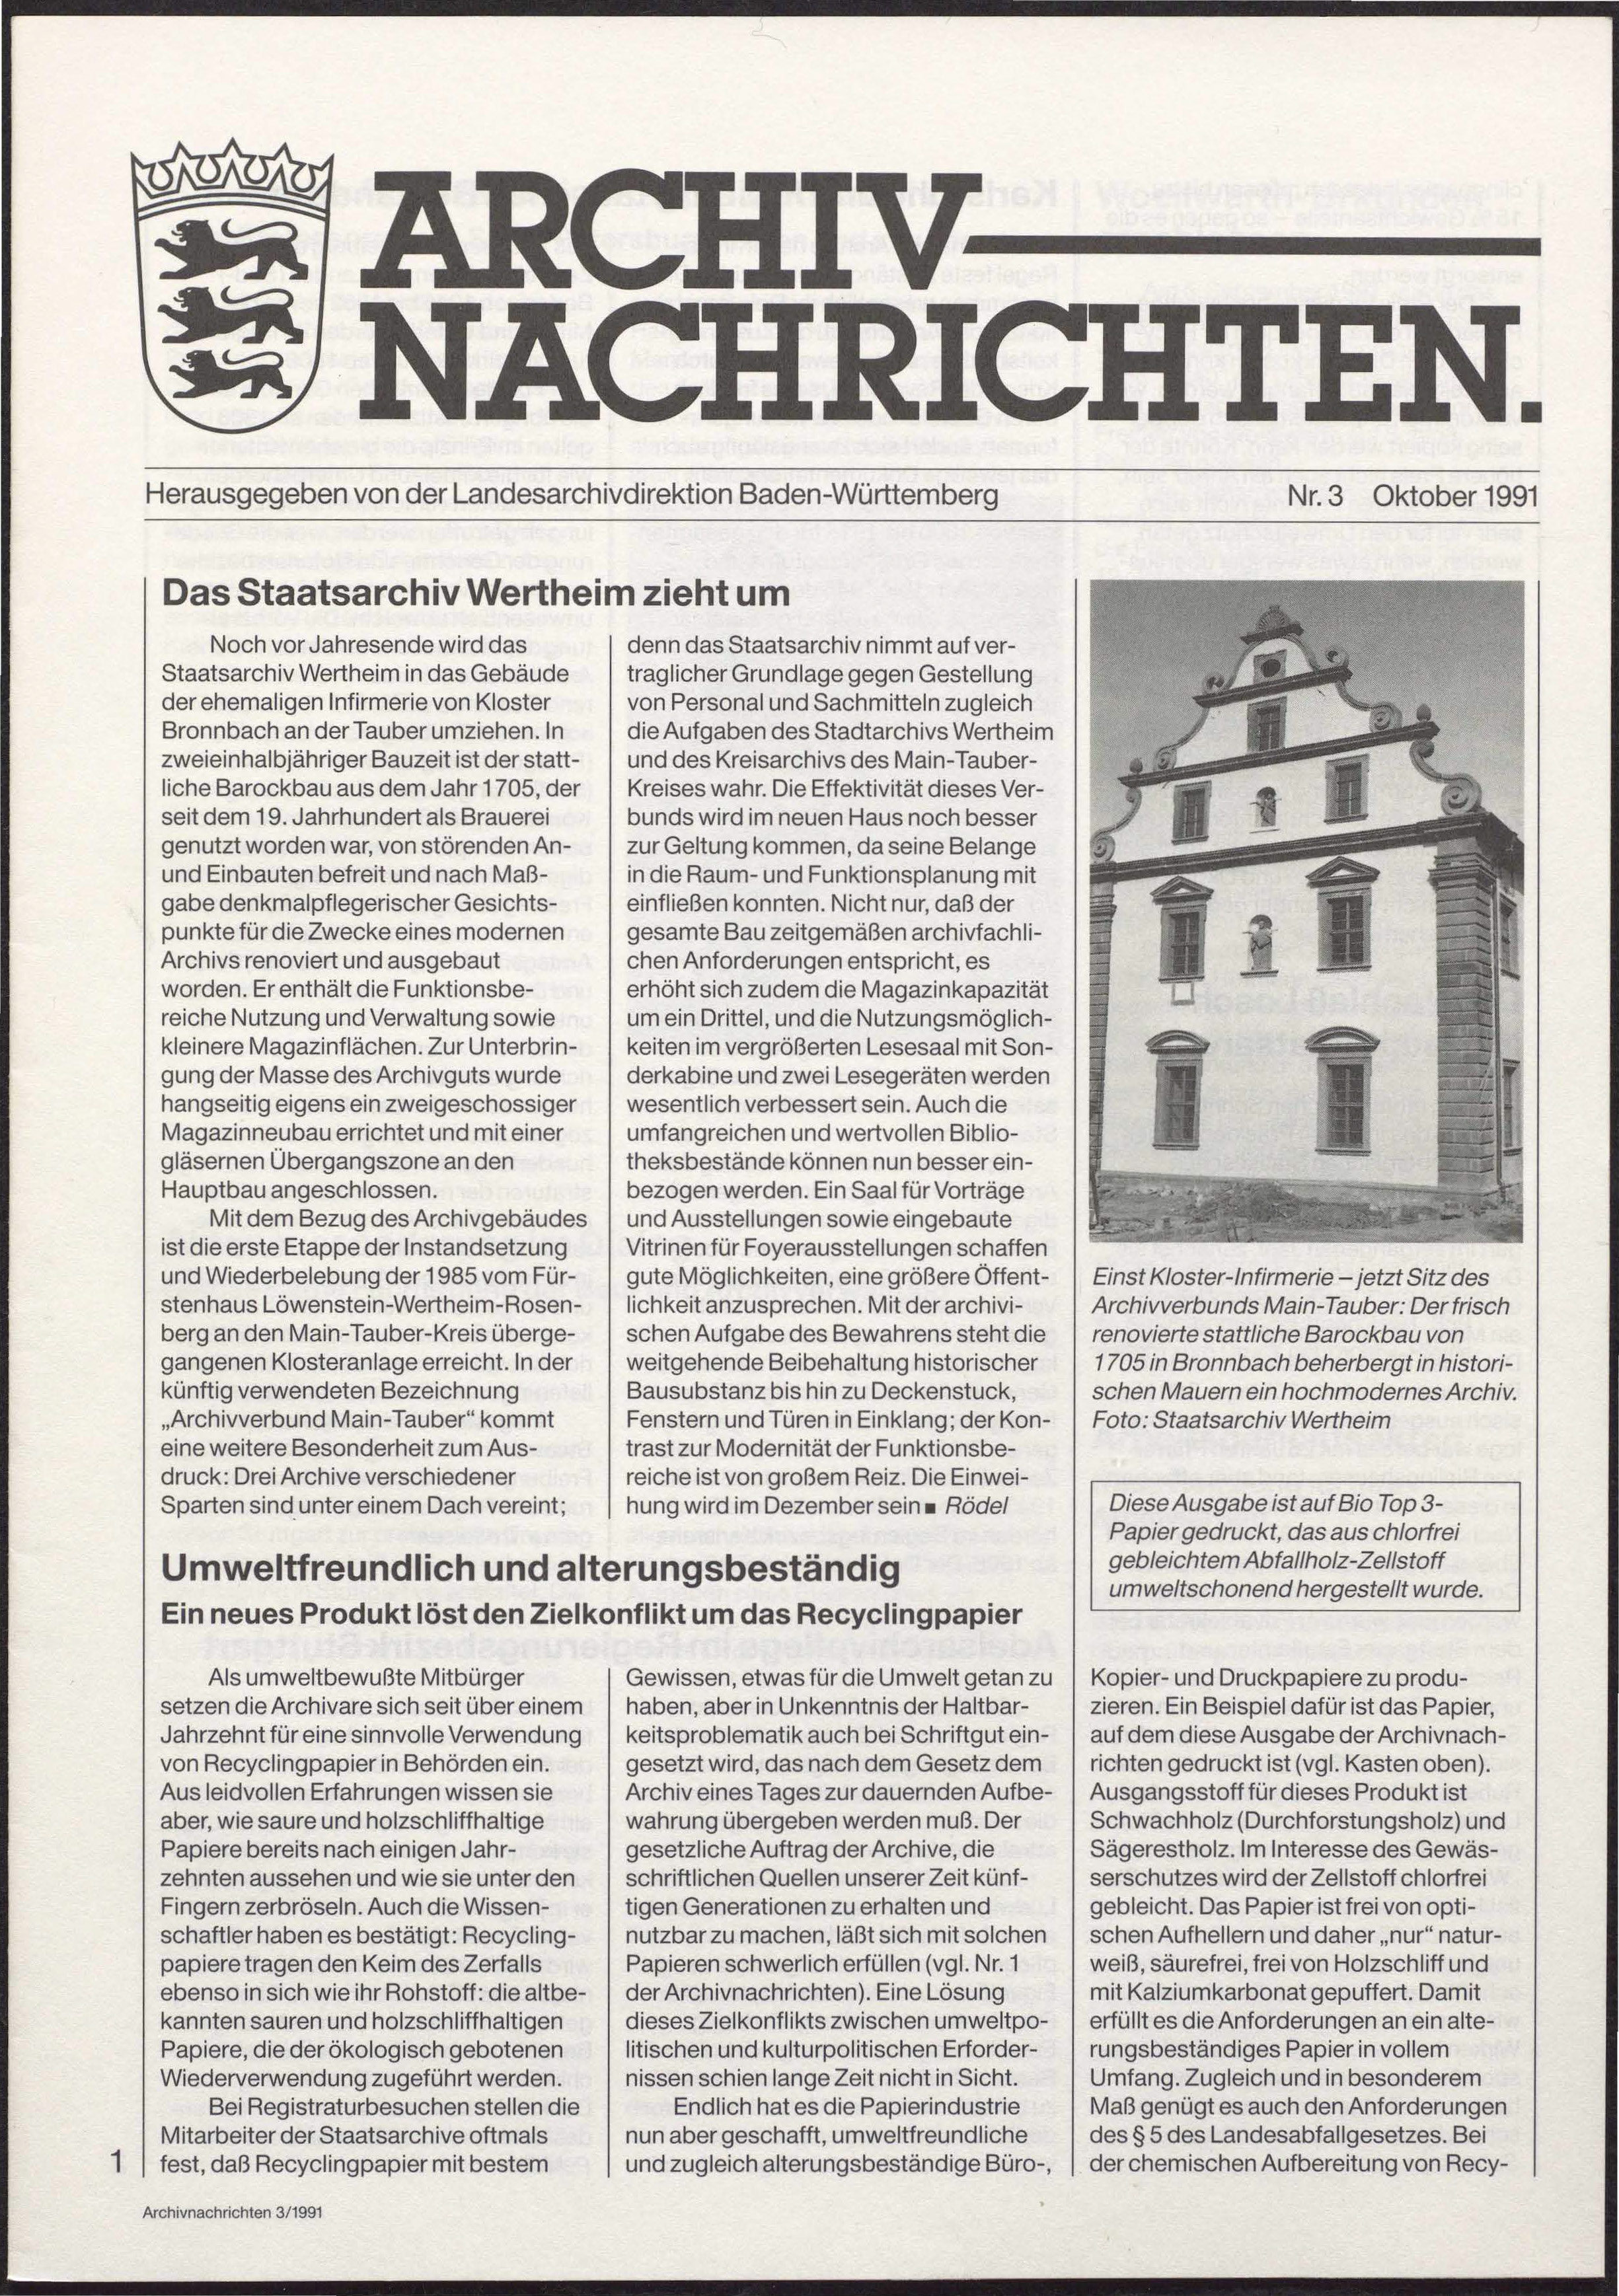                     Ansehen Nr. 3 (1991): Archivnachrichten
                